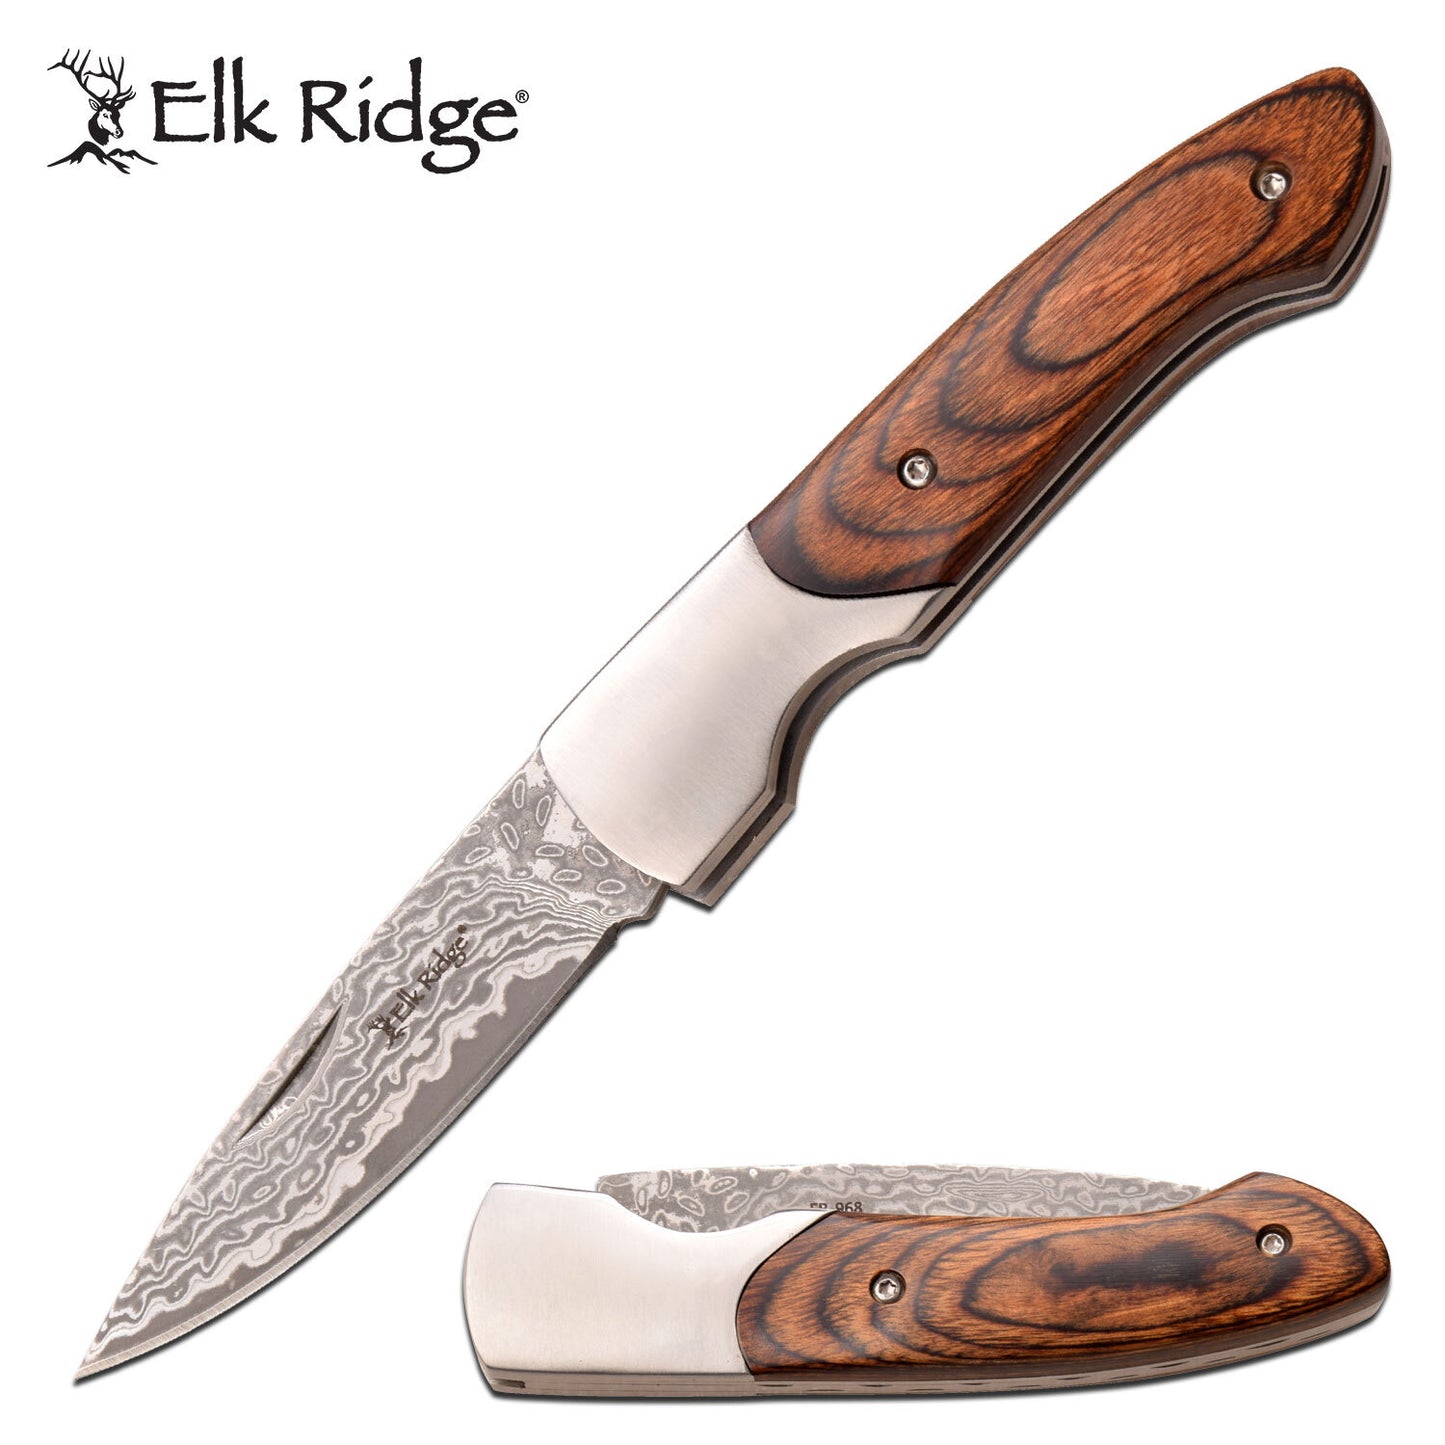 Elk Ridge Elk Ridge 6.55 Inch Hunting Drop Point Folding Blade Knife - Pakkawood Handle #er-968Pw Gray